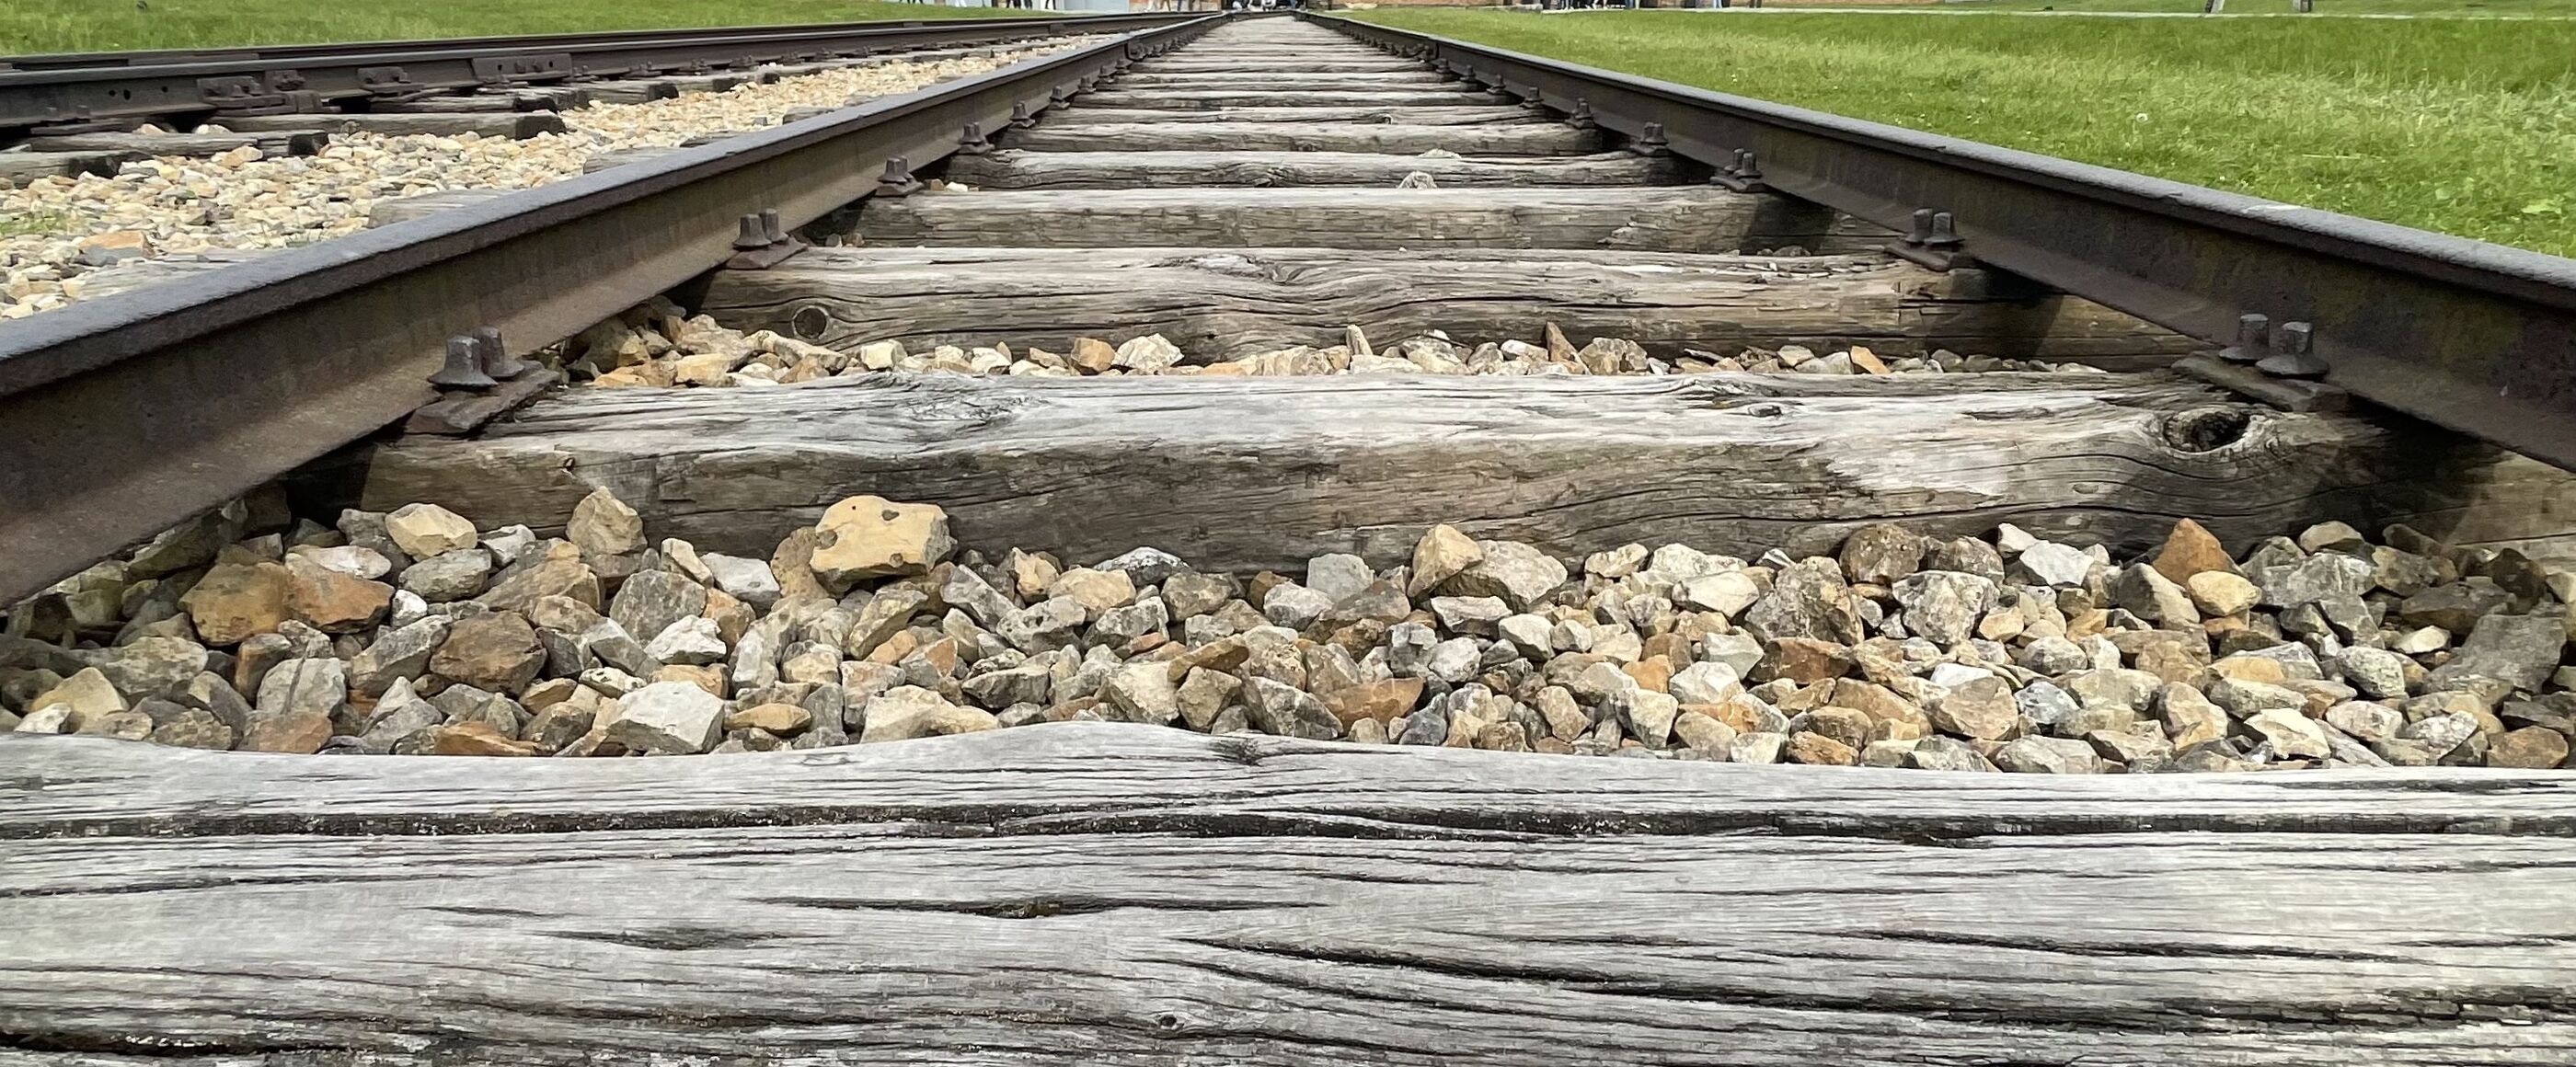 Blick aus der Froschperspektive über Gleise, die zu einem großen Gebäude führen - dem KZ Auschwitz.